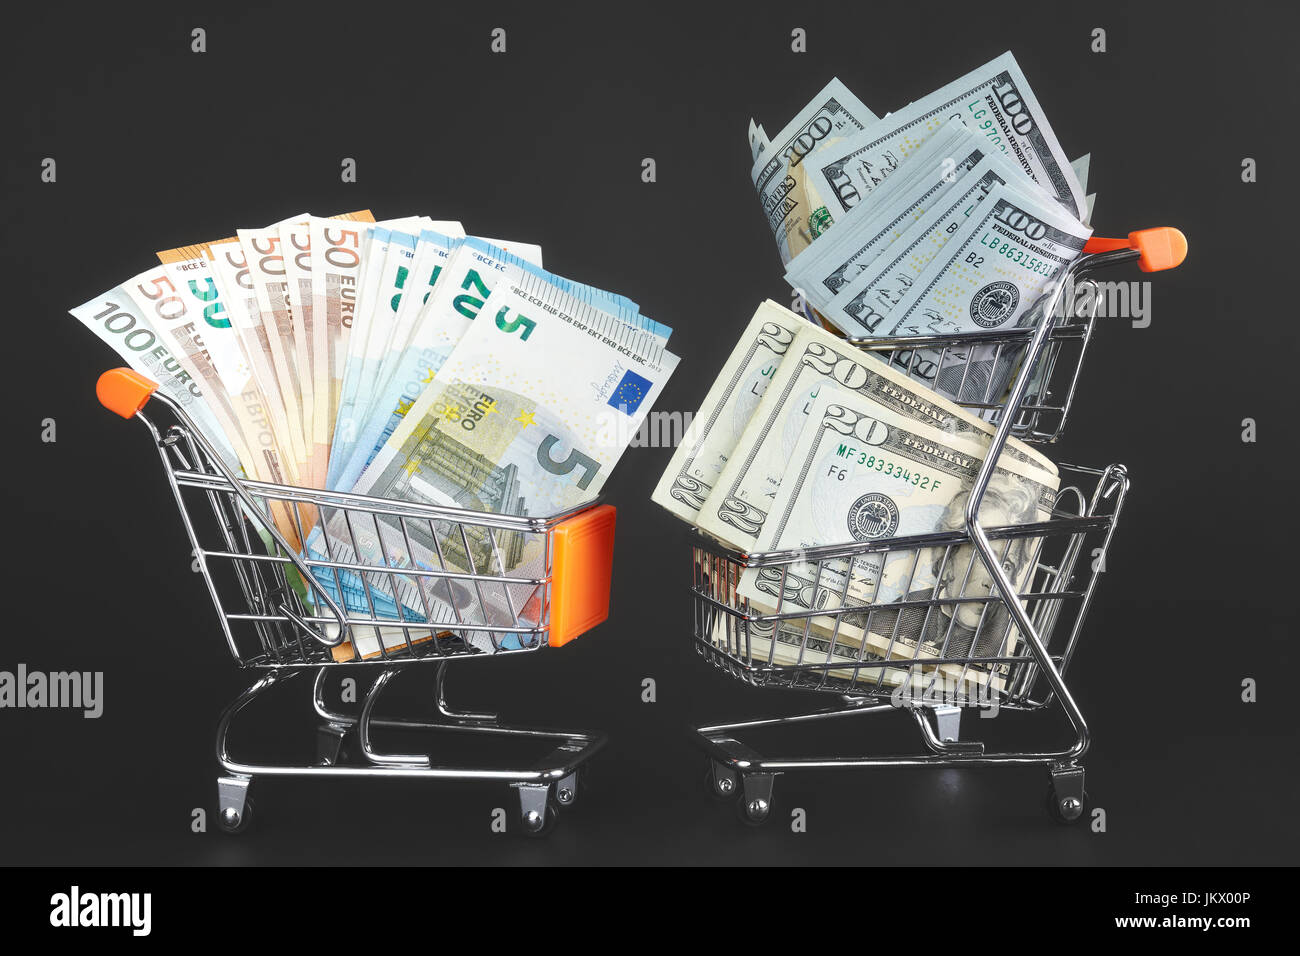 Deux chariots de magasinage avec un rival de devises, rempli de billets de dollars US et un autre avec des billets en euros, image conceptuelle. Banque D'Images